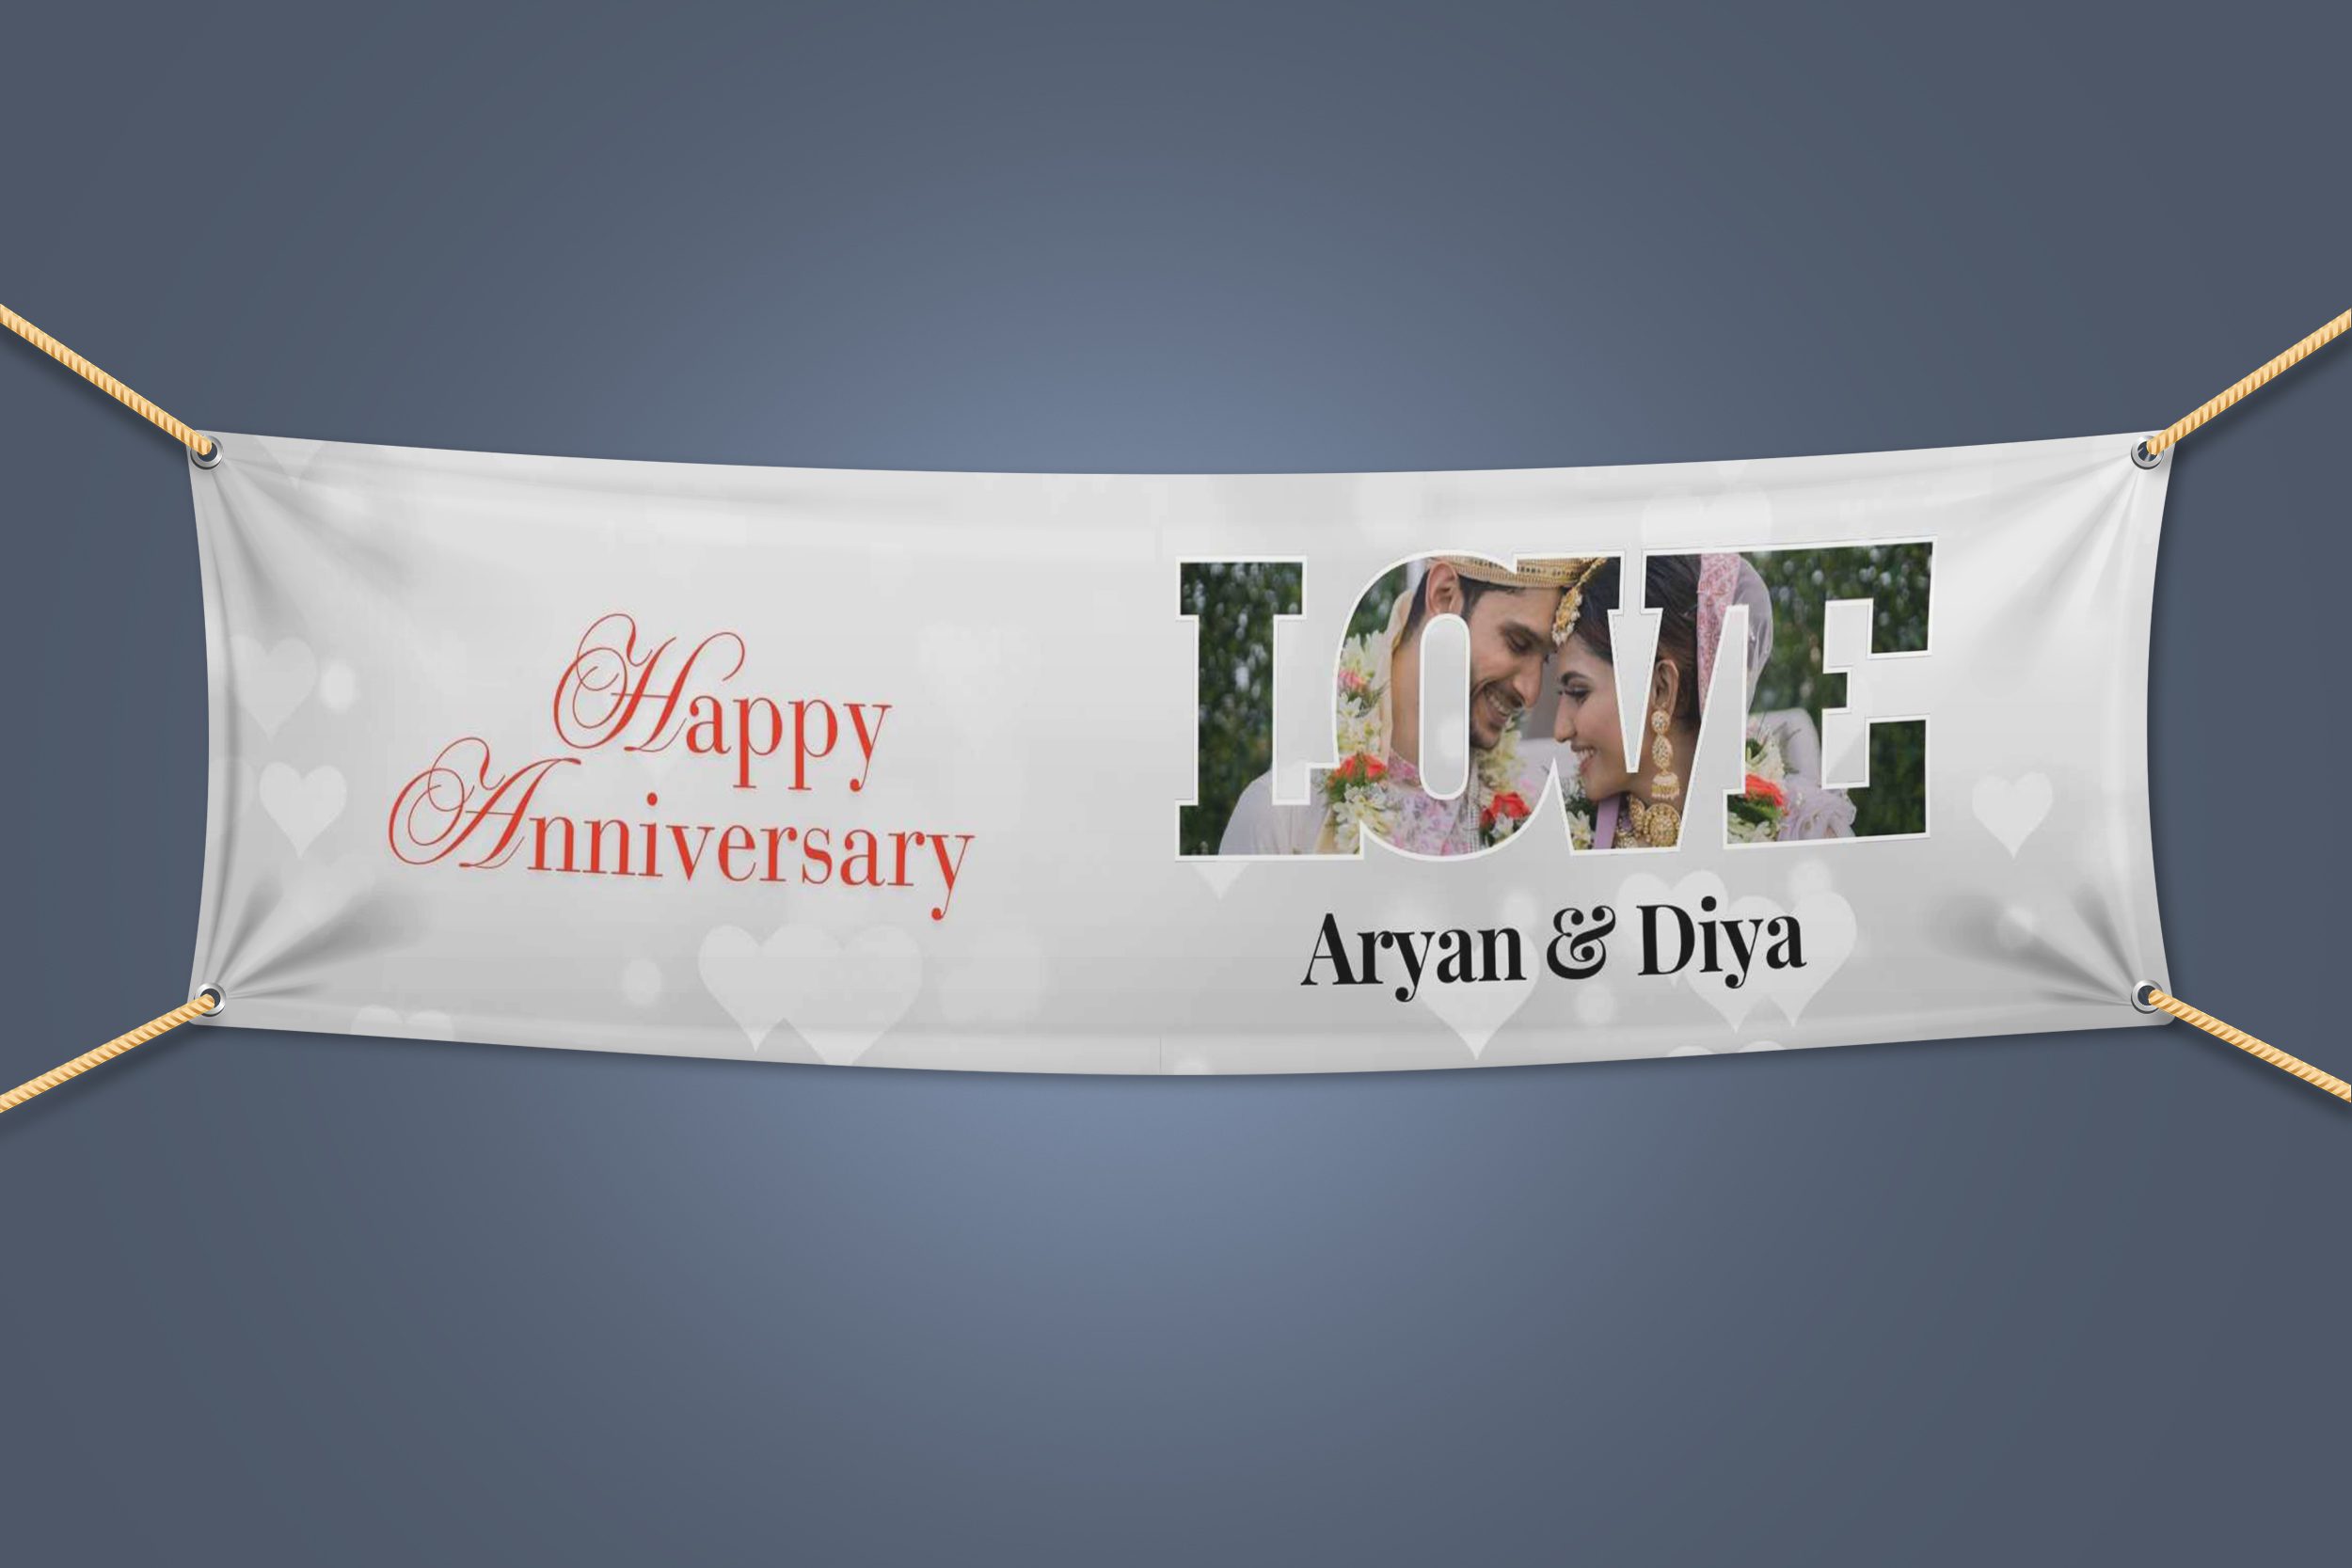 Happy Anniversary Flex Banner – 6 x 2 Ft